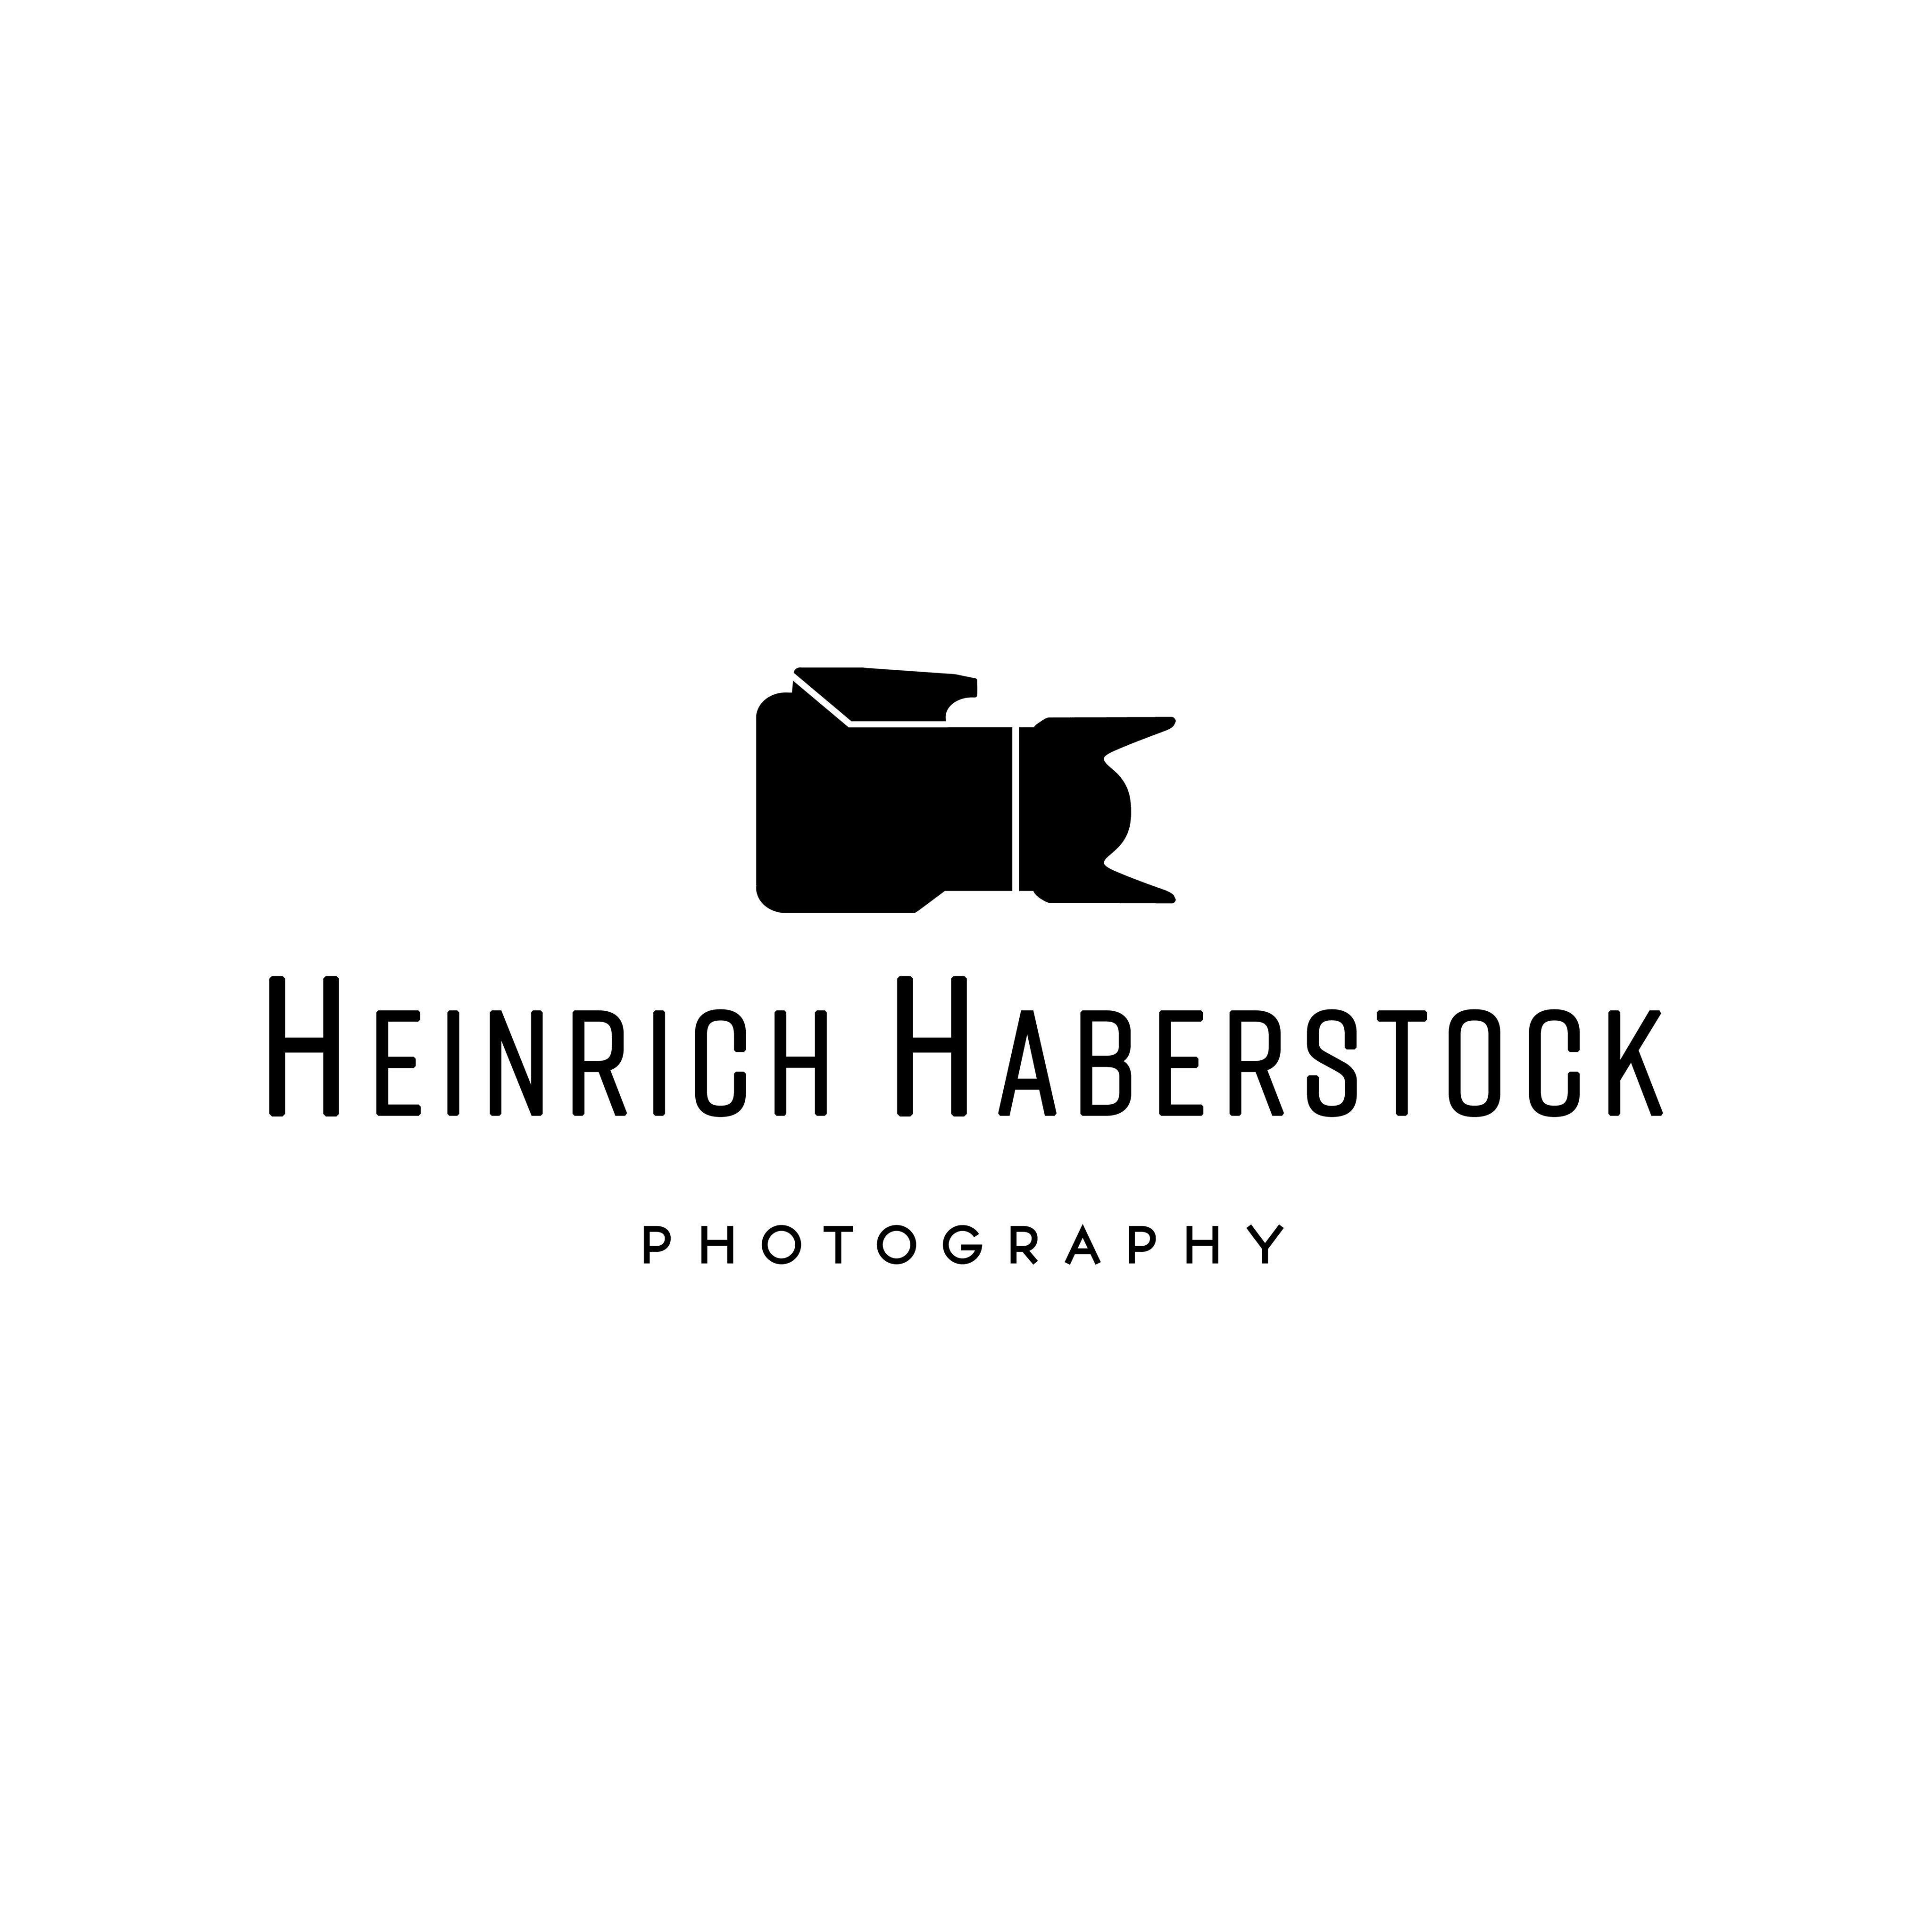 Heinrich Haberstock